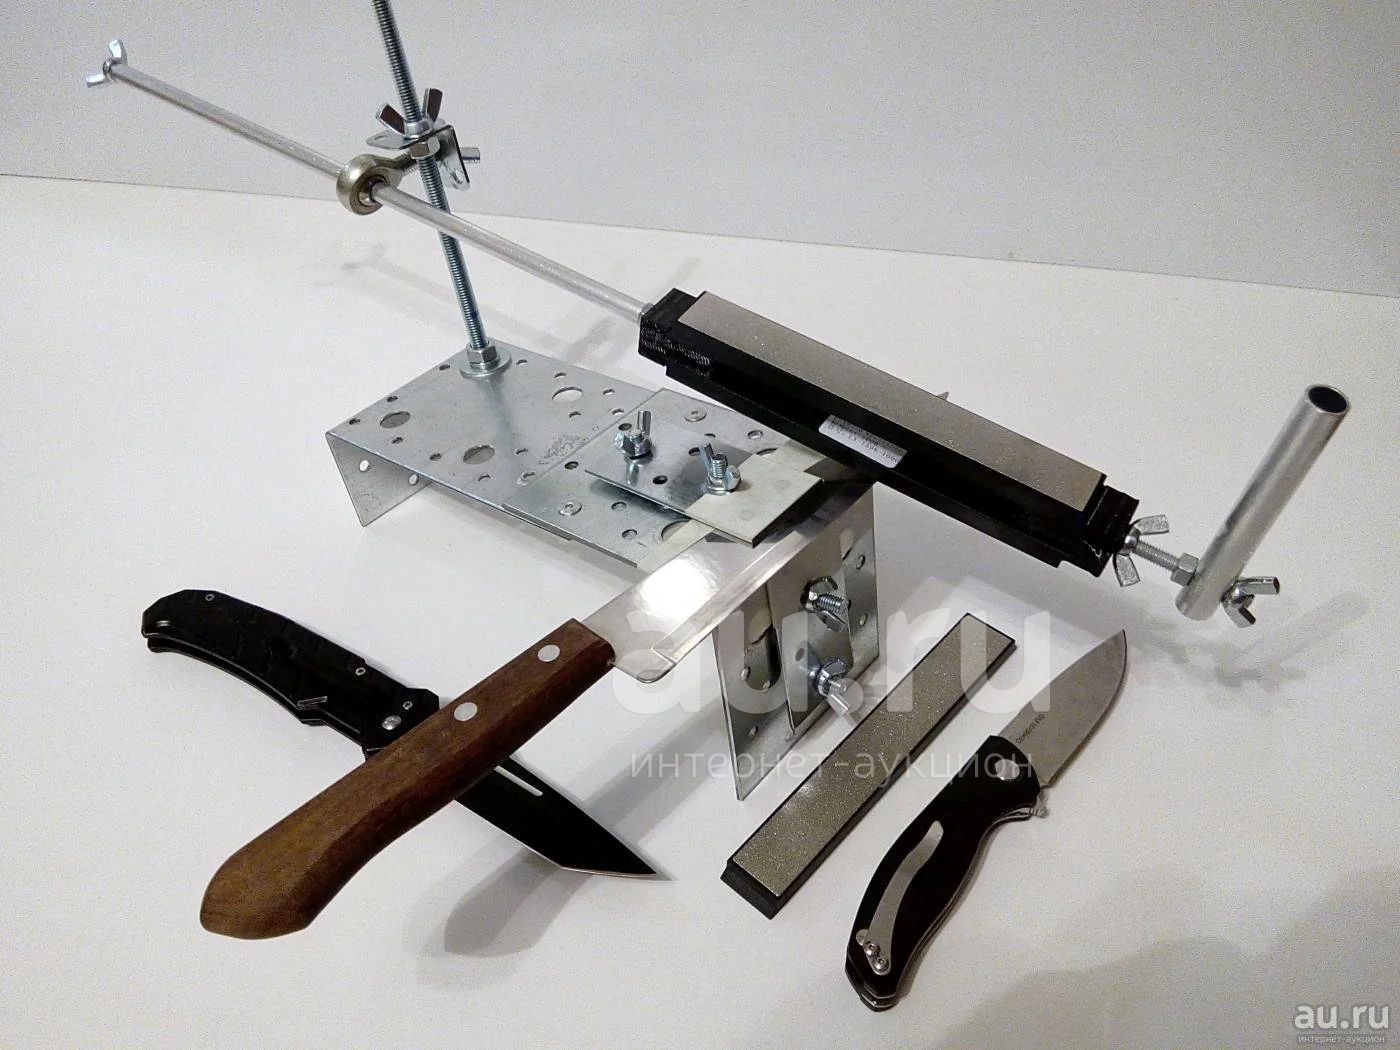 Делают заточку. Ножеточка иж1. Wg250-h приспособление для заточки ножей. Заточной станок для ножей своими руками. Самодельные точила для ножей.